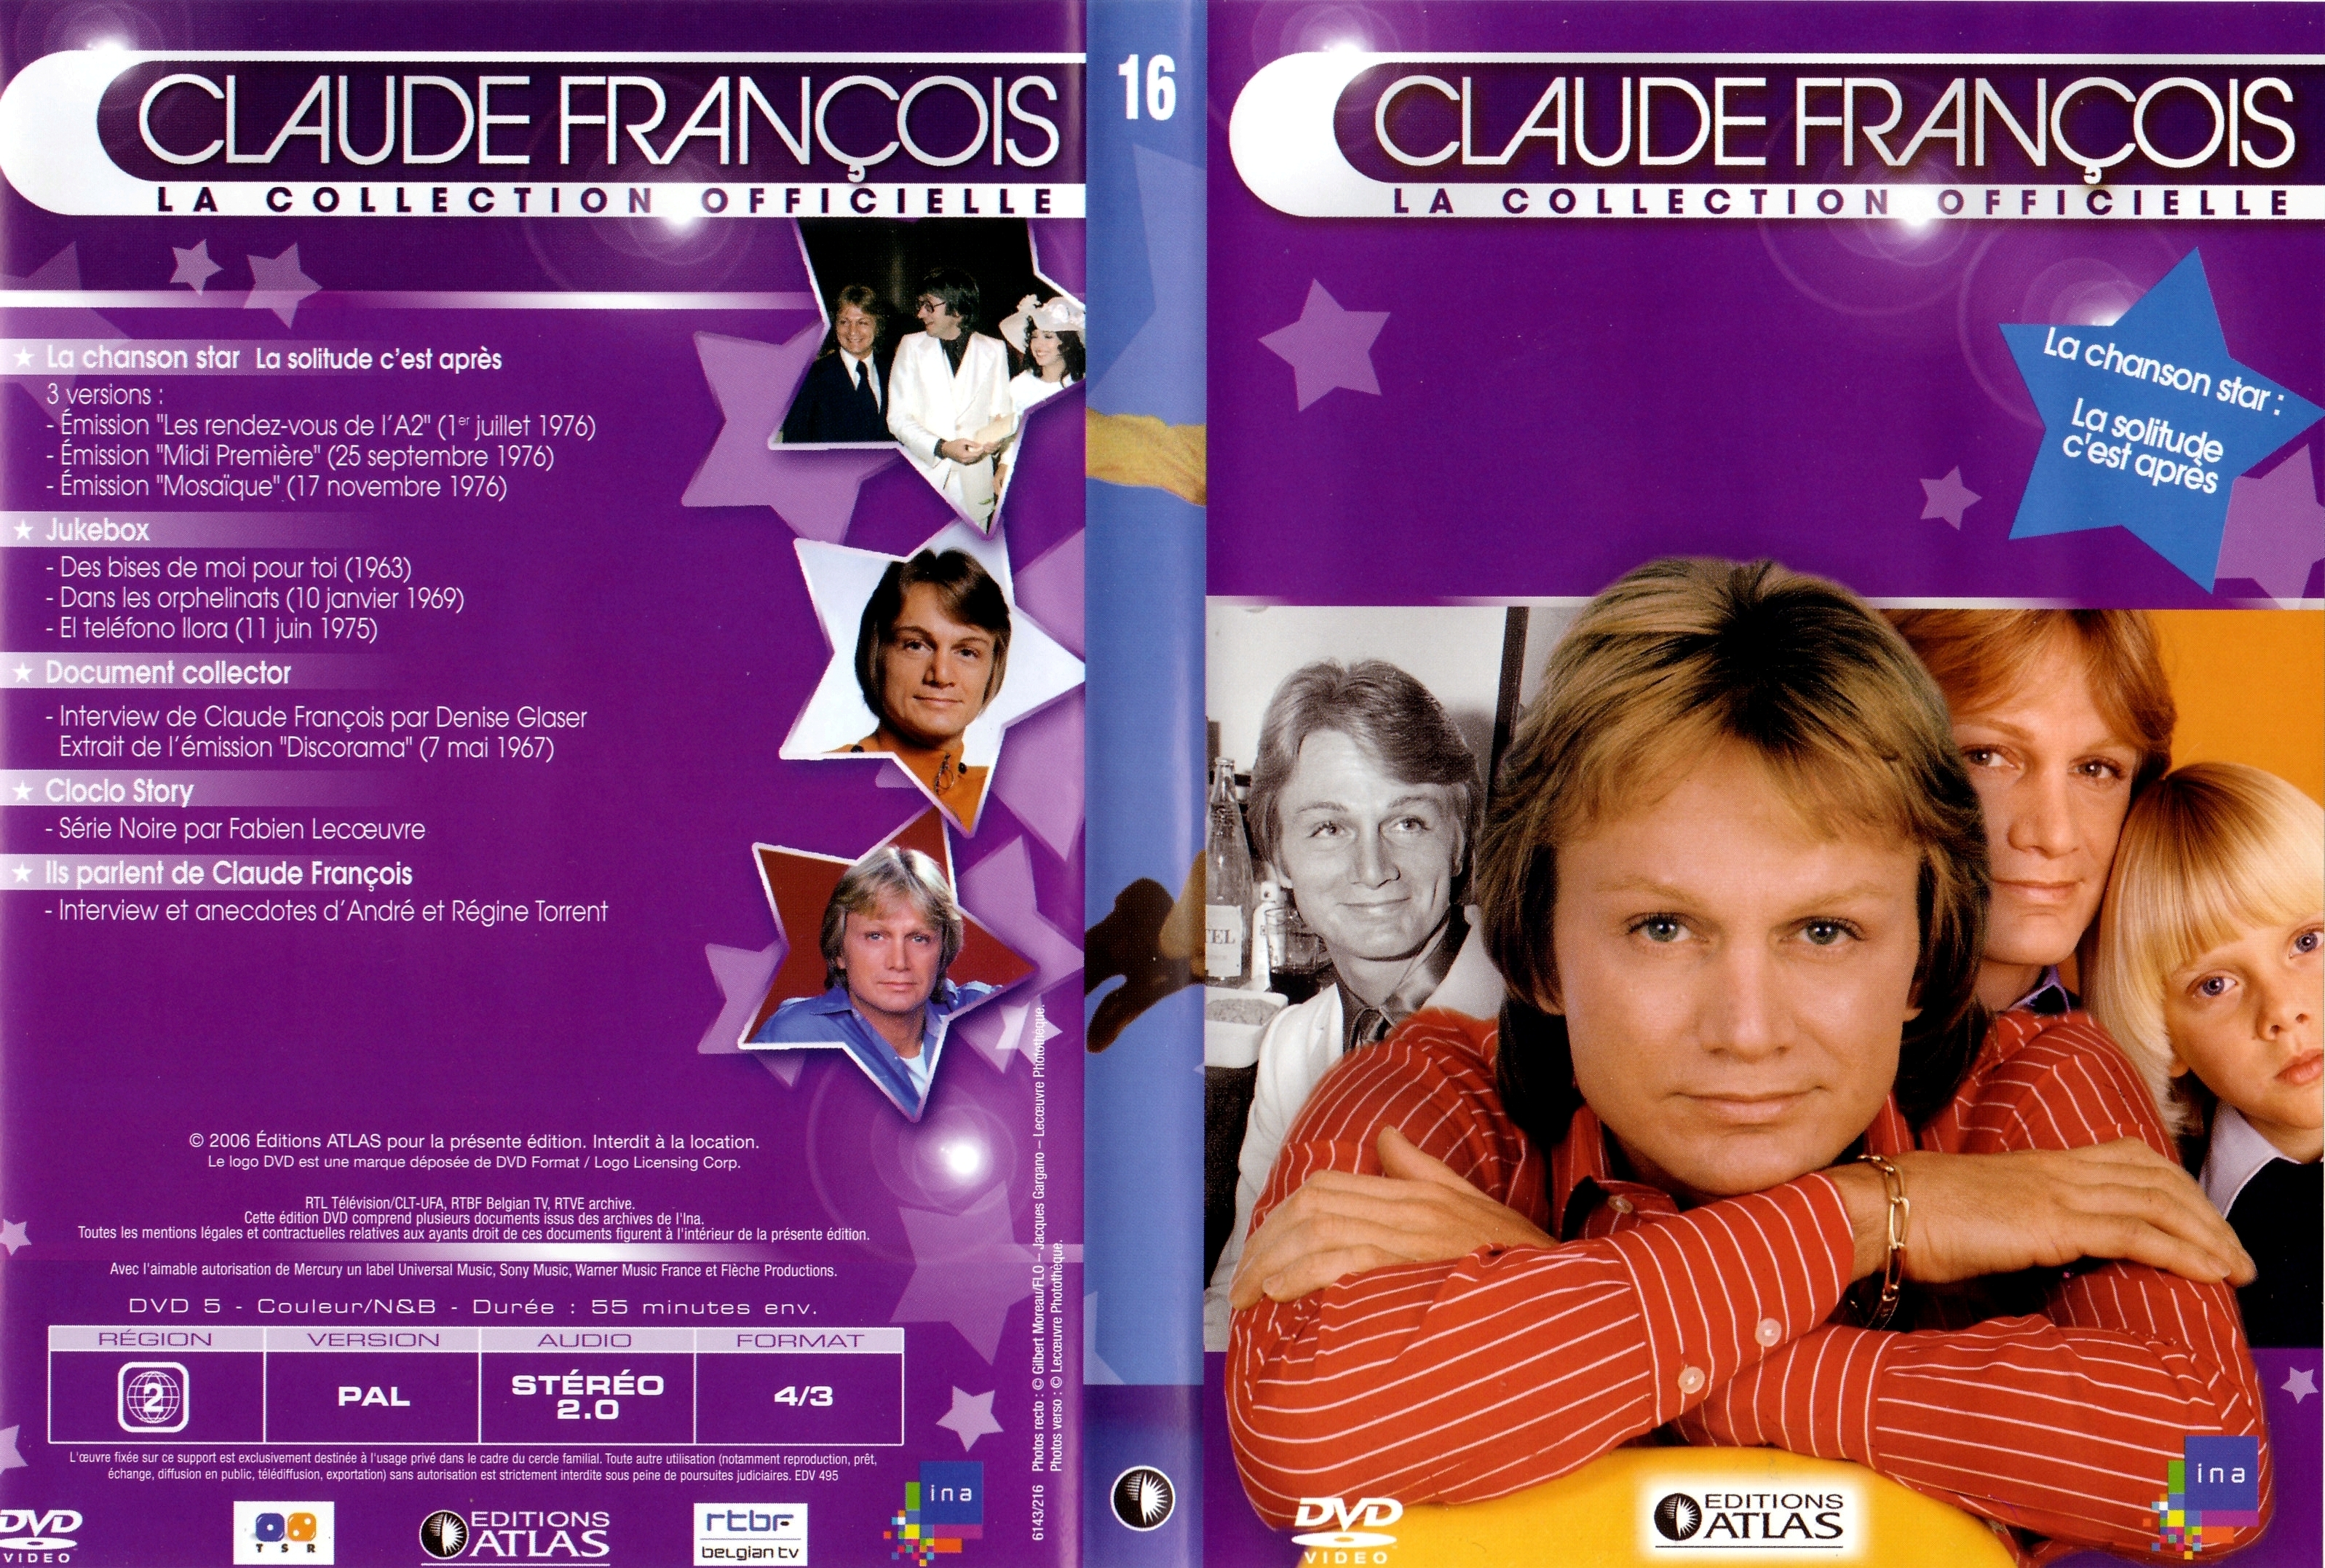 Jaquette DVD Claude Francois la collection officielle vol 16